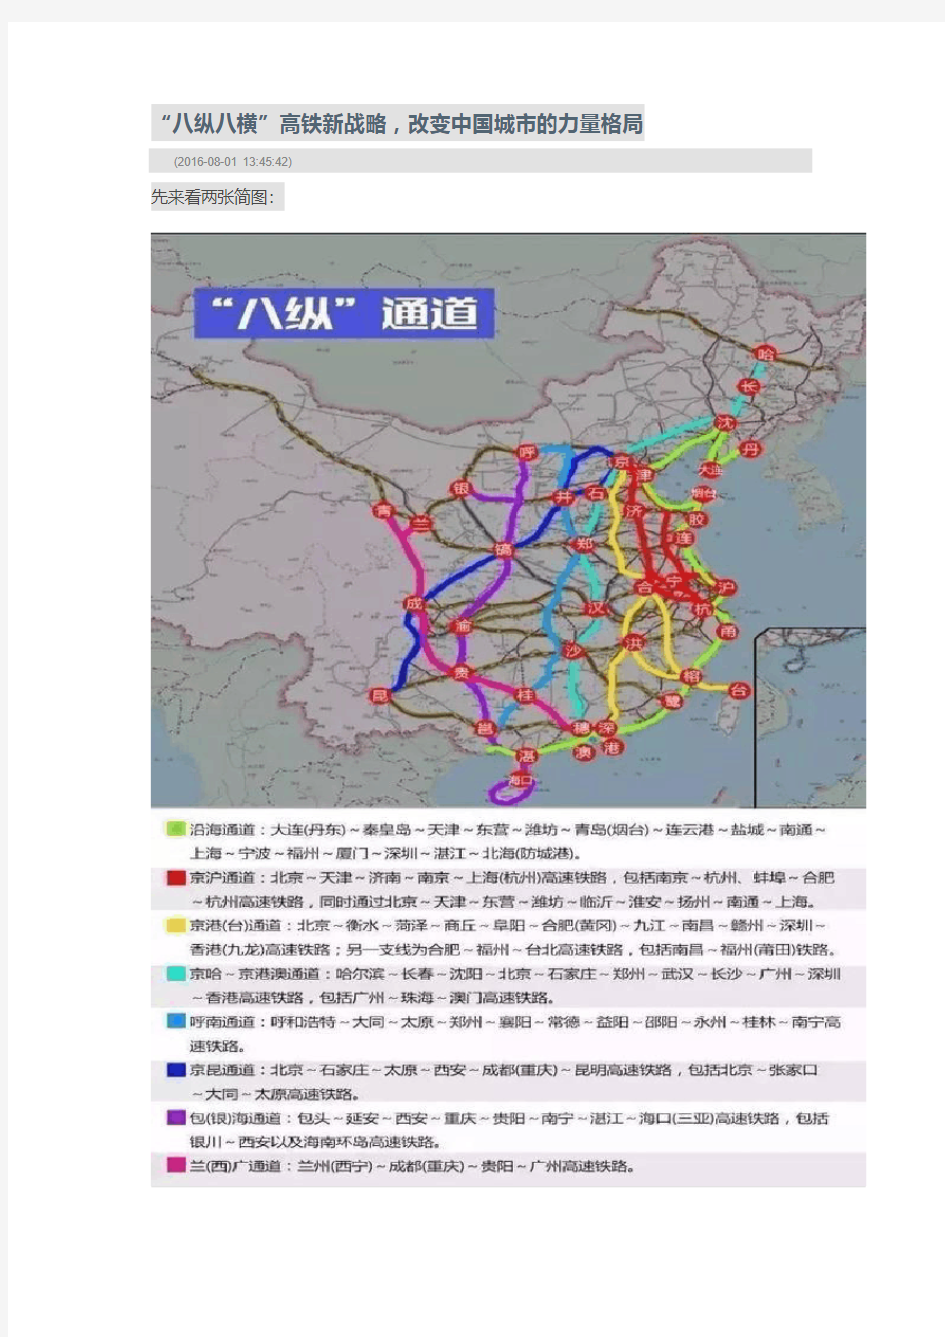 “八纵八横”高铁新战略,改变中国城市的力量格局